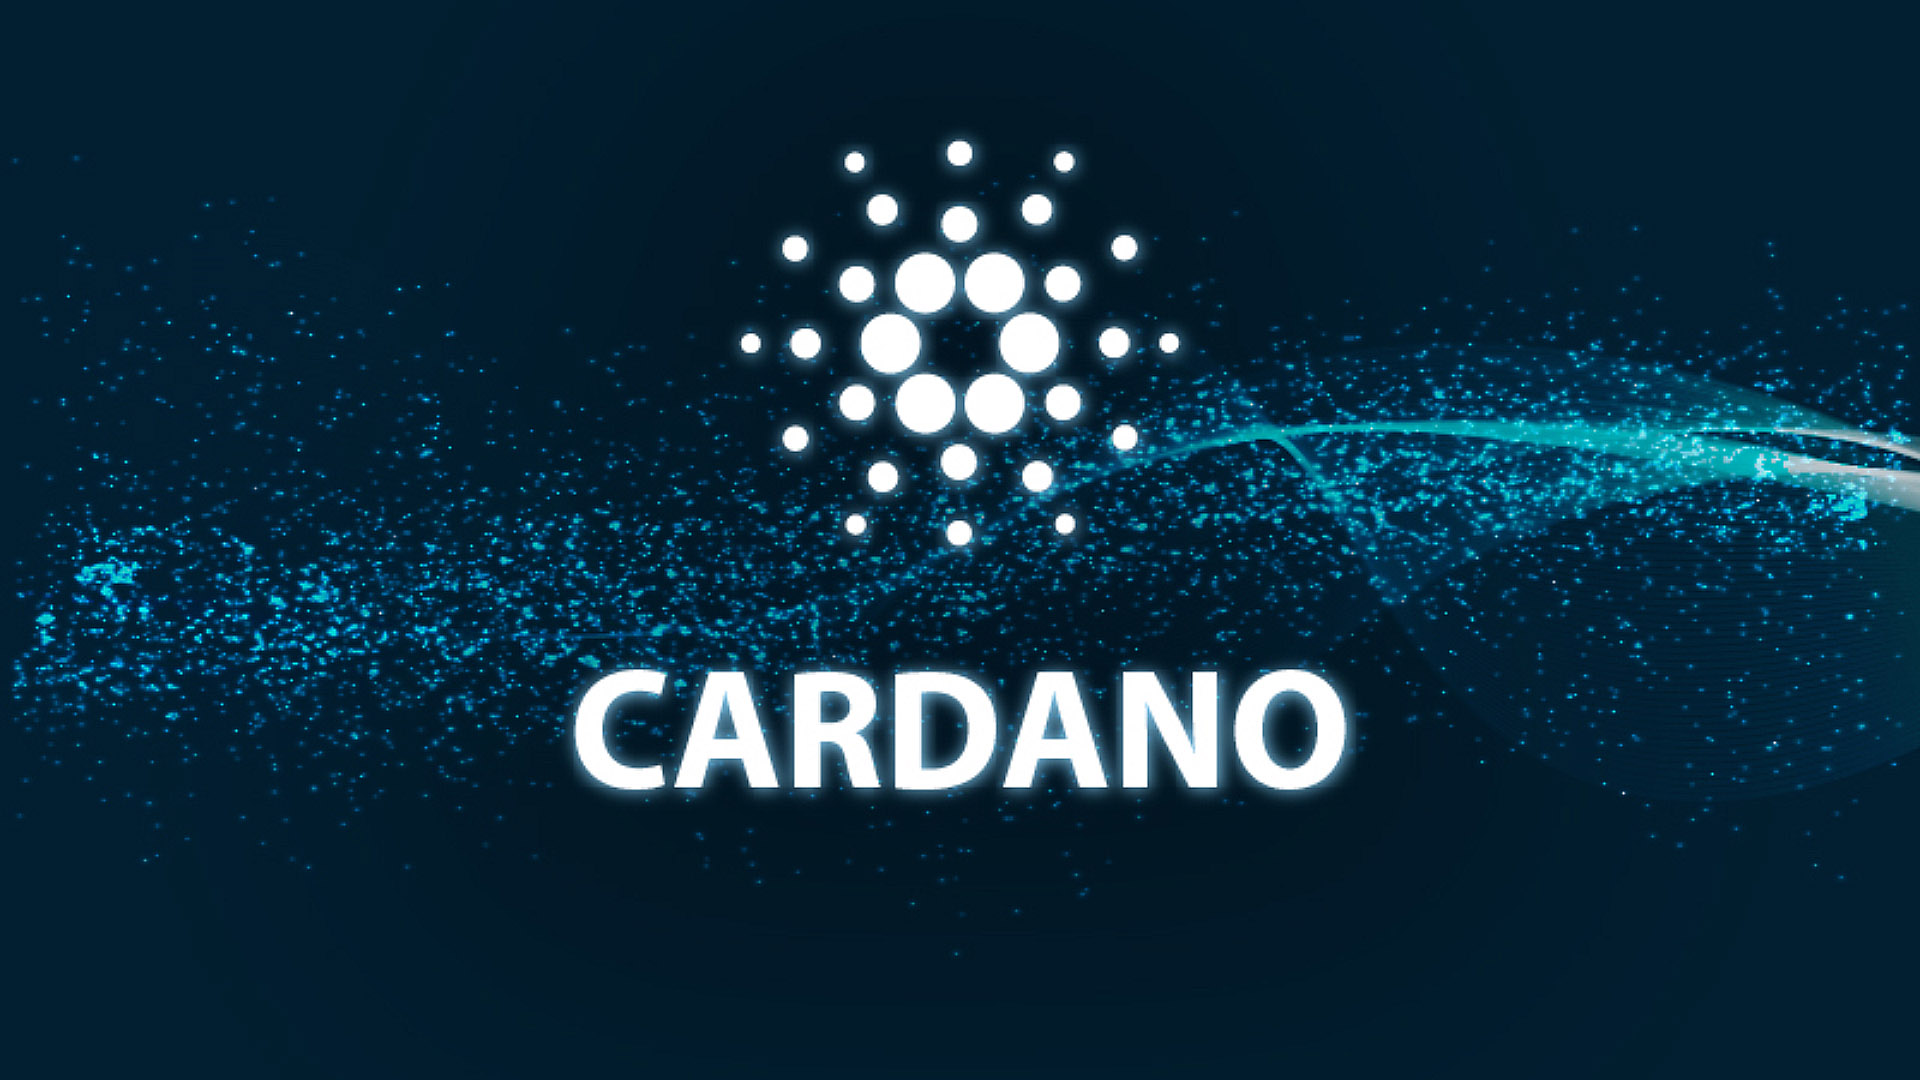 بنیاد کاردانو Cardano